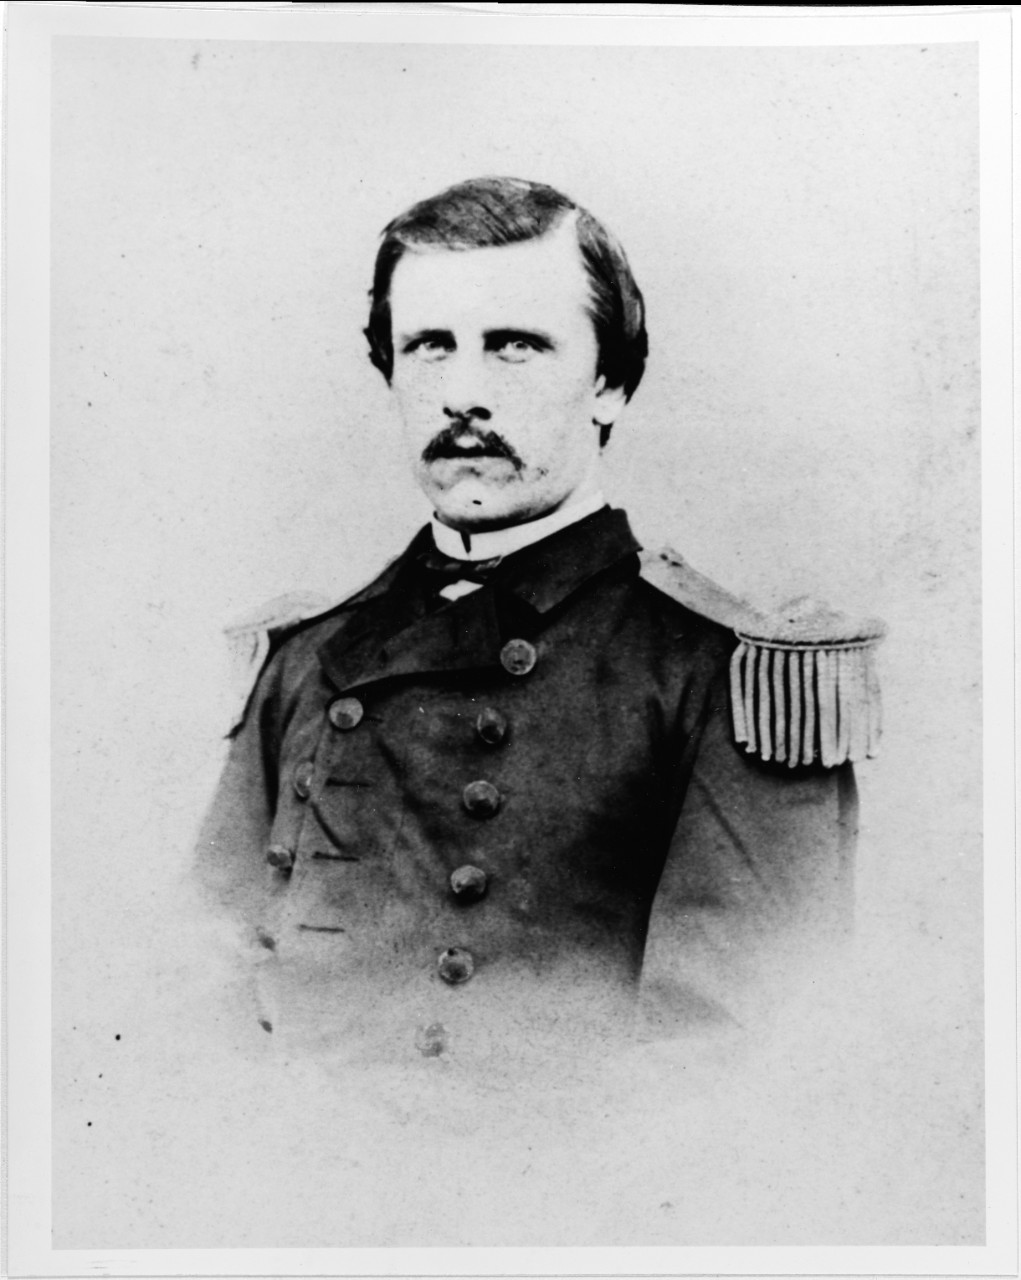 Lieutenant Oscar W. Fareholt, USN